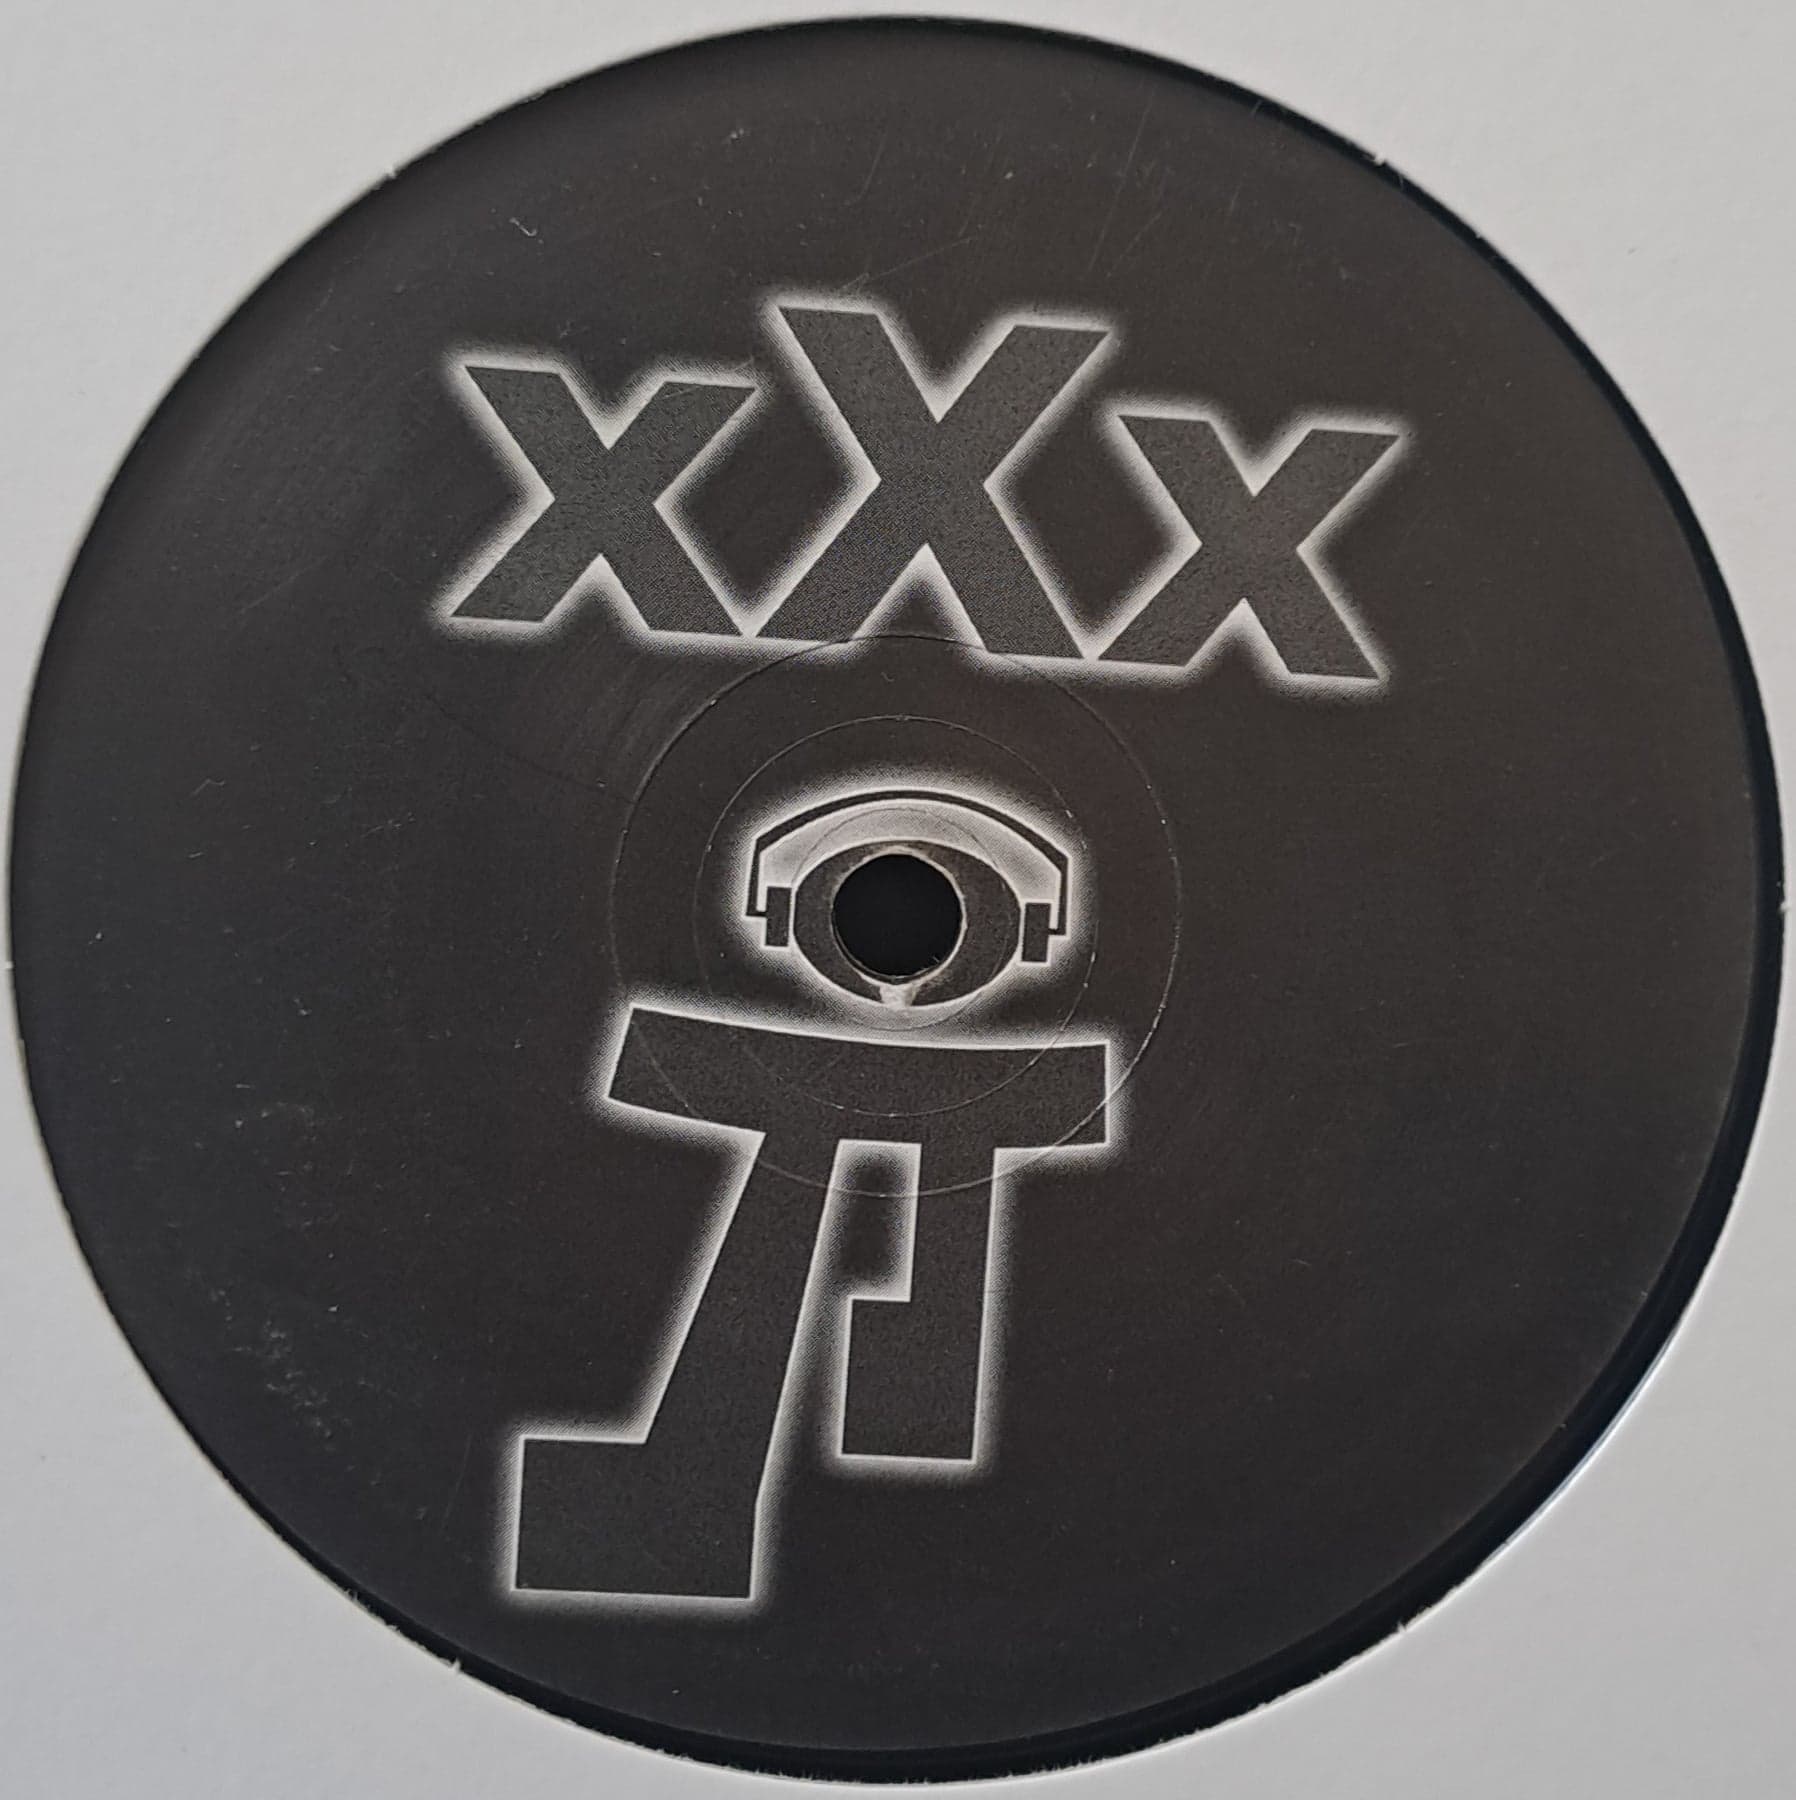 XXX 03 - vinyle techno